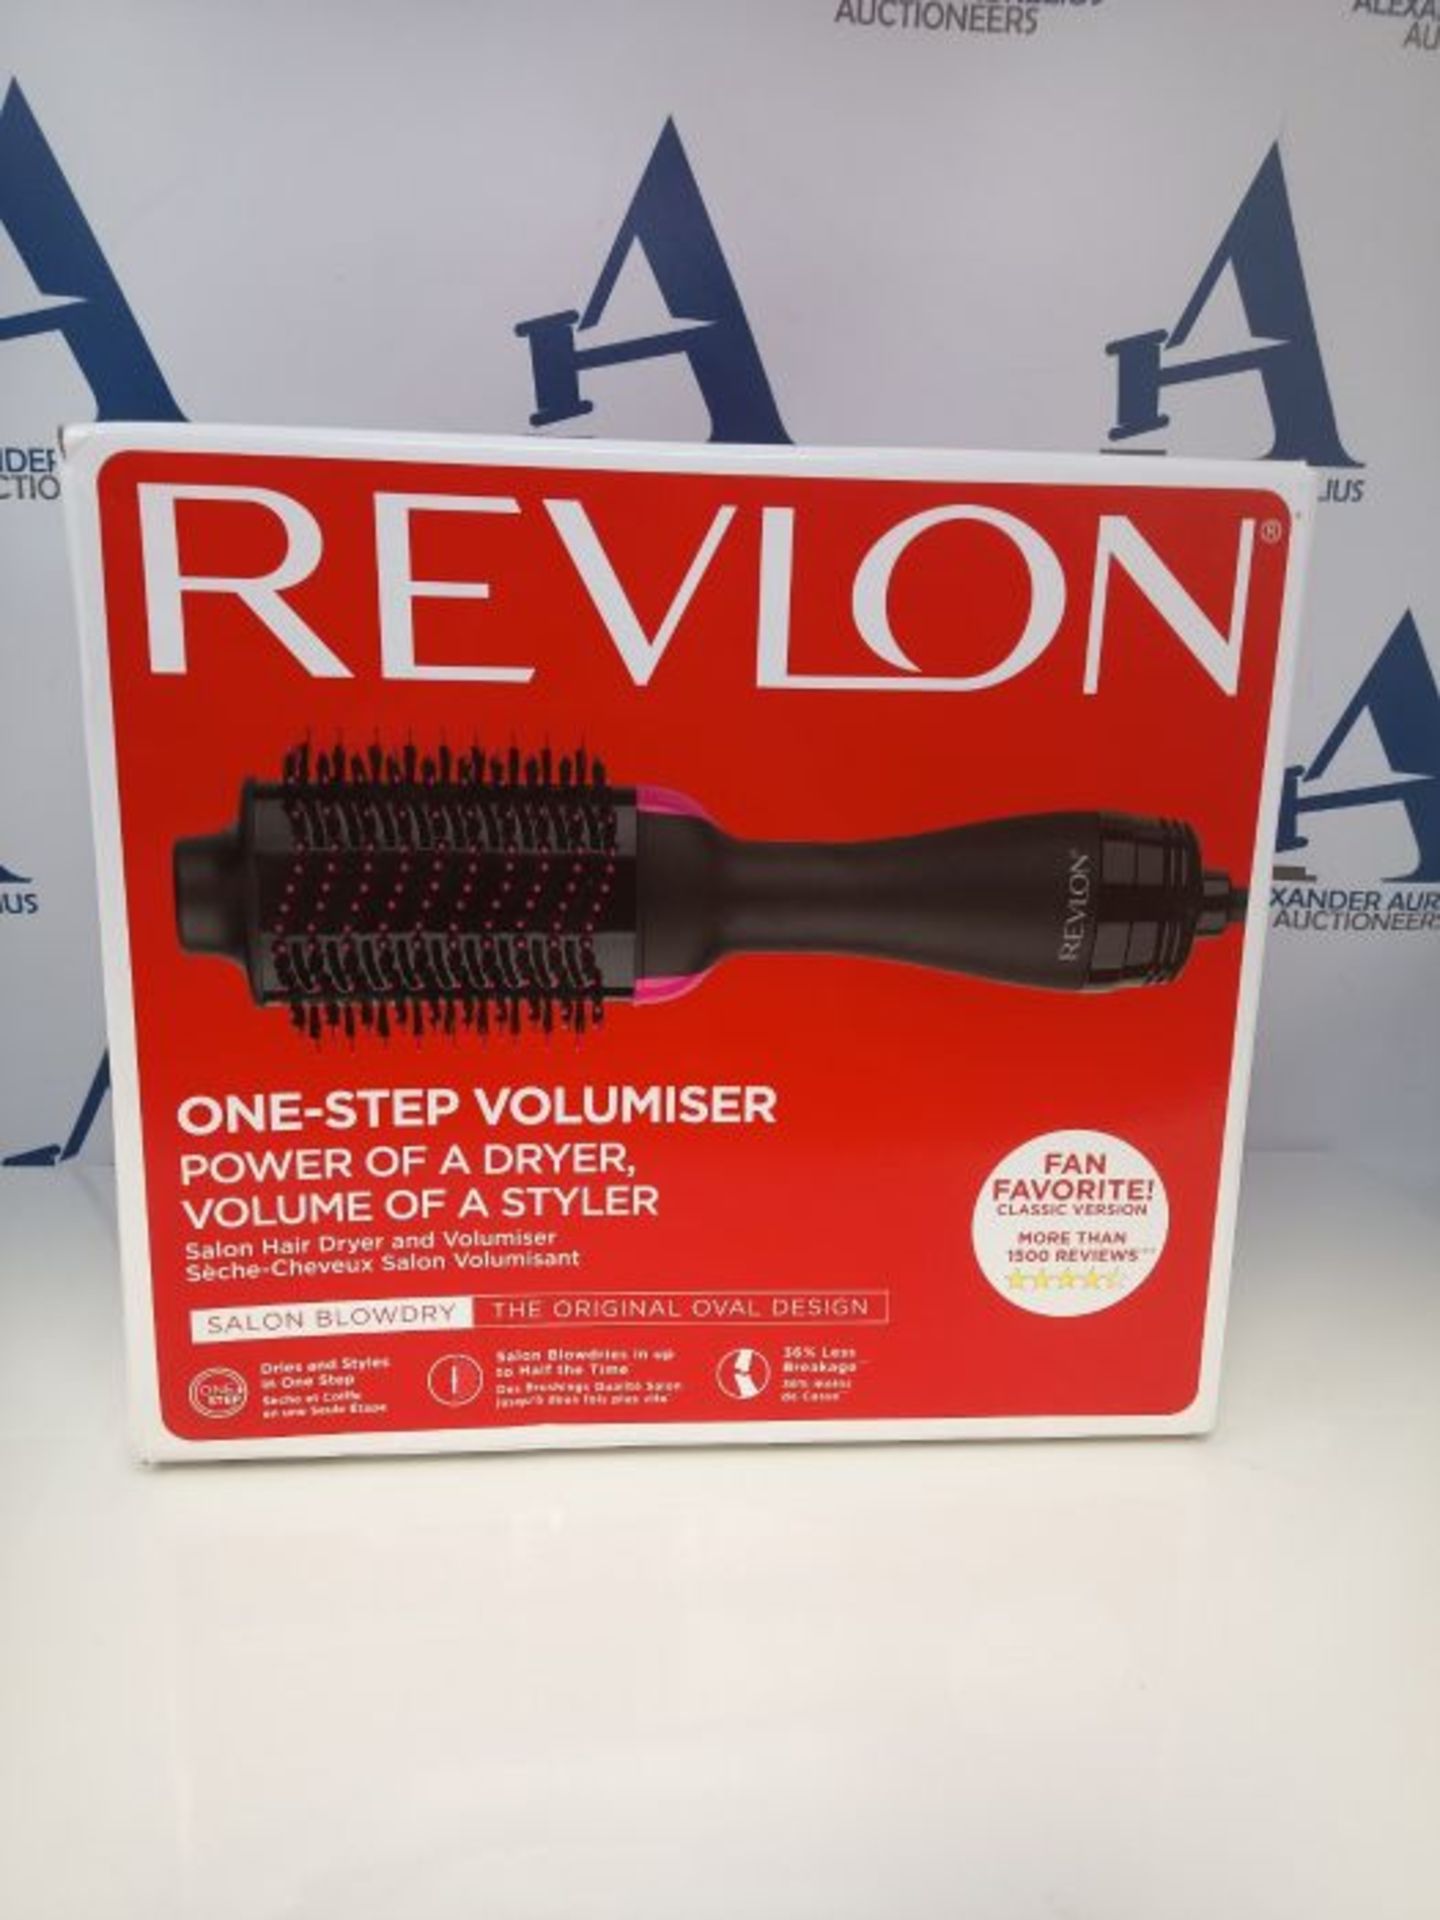 Revlon RVDR5222E2 Salon One-Step Hair Asciugacapelli e Volumizzante, 800 W, Nero/Rosa - Image 2 of 3